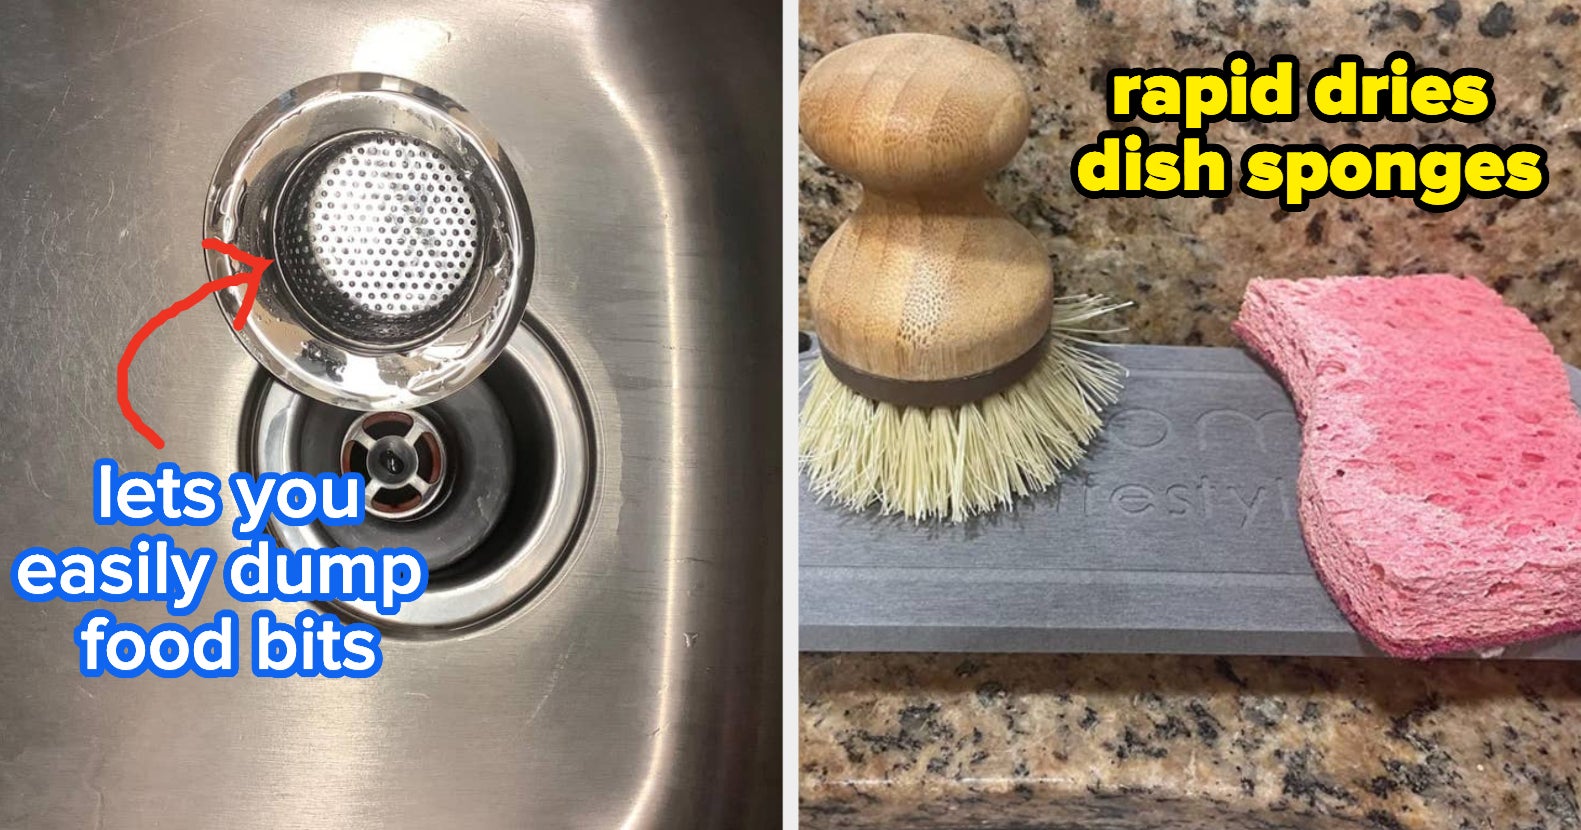 11.3 OZ Dish Soap Dispenser and Sponge Holder for Kitchen Sink